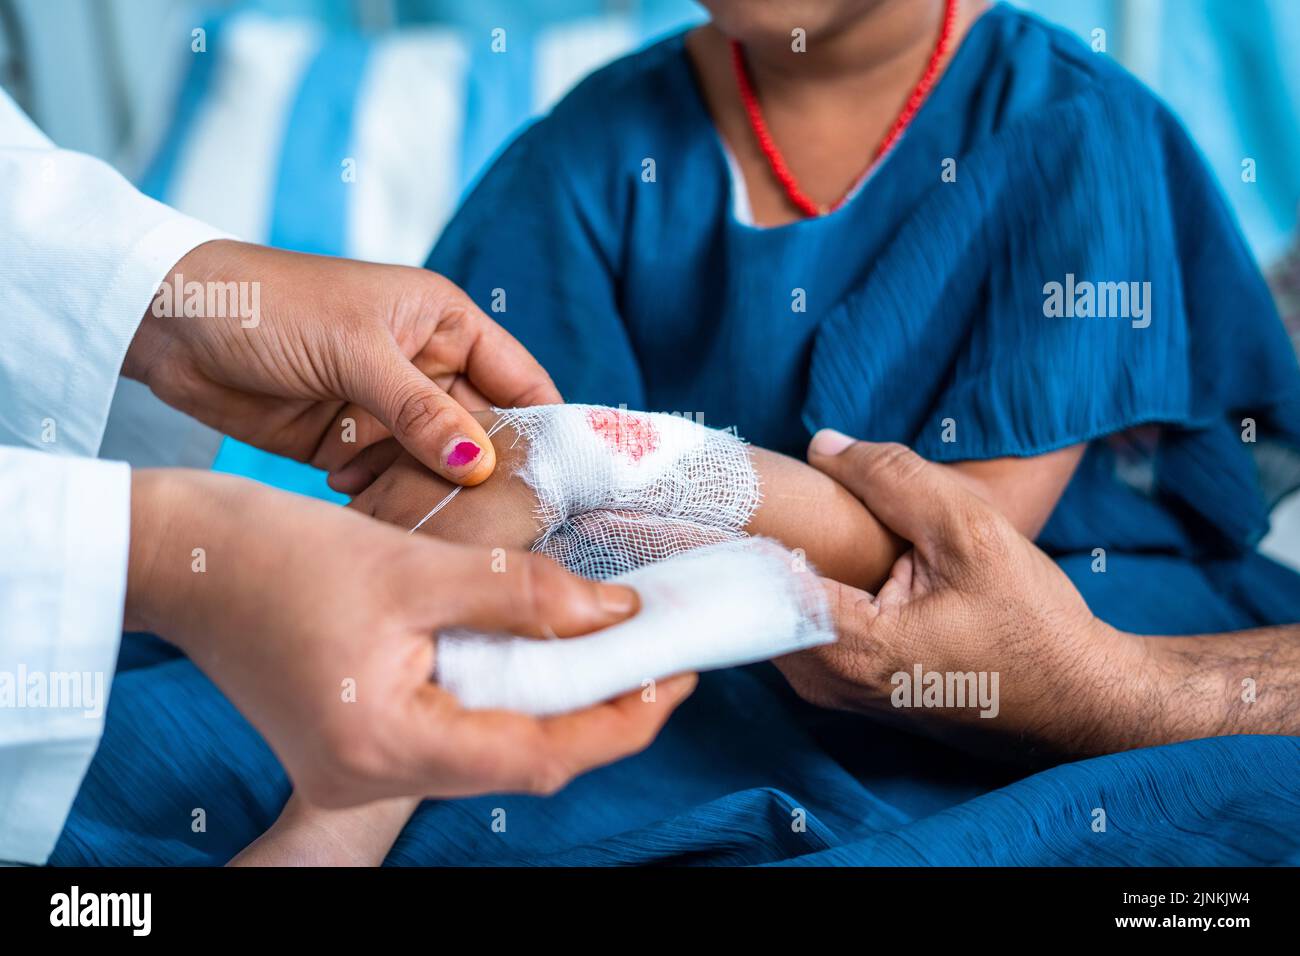 Gros plan le docteur noue le bandage à des enfants inquiets la main blessée à l'hôpital - concept de l'assurance-maladie, le mal de l'enfance et les premiers soins médicaux. Banque D'Images